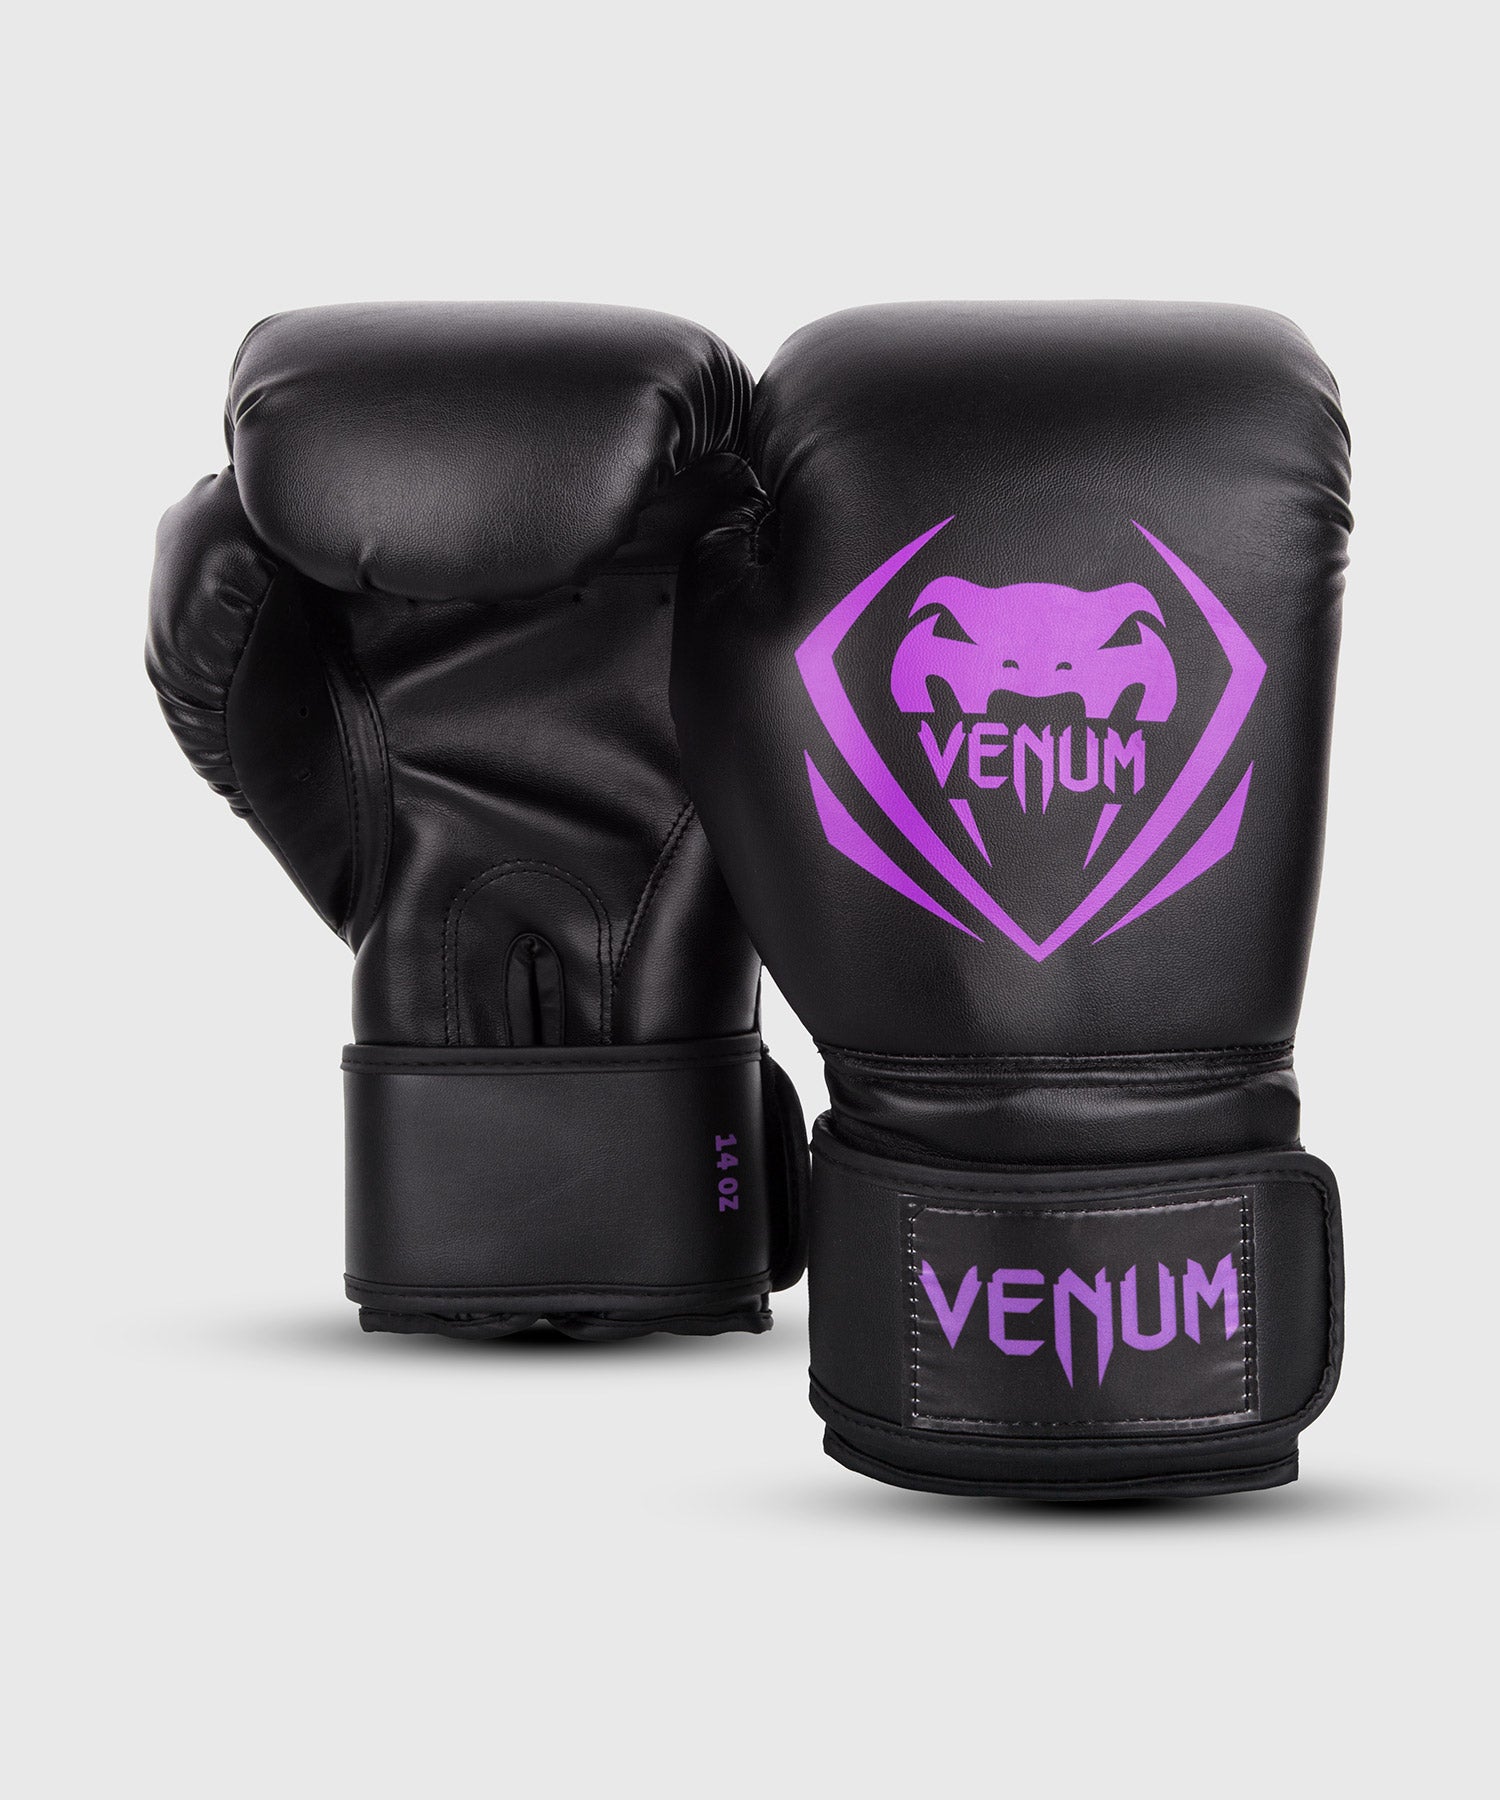 Gants de boxe Venum Vector VENUM